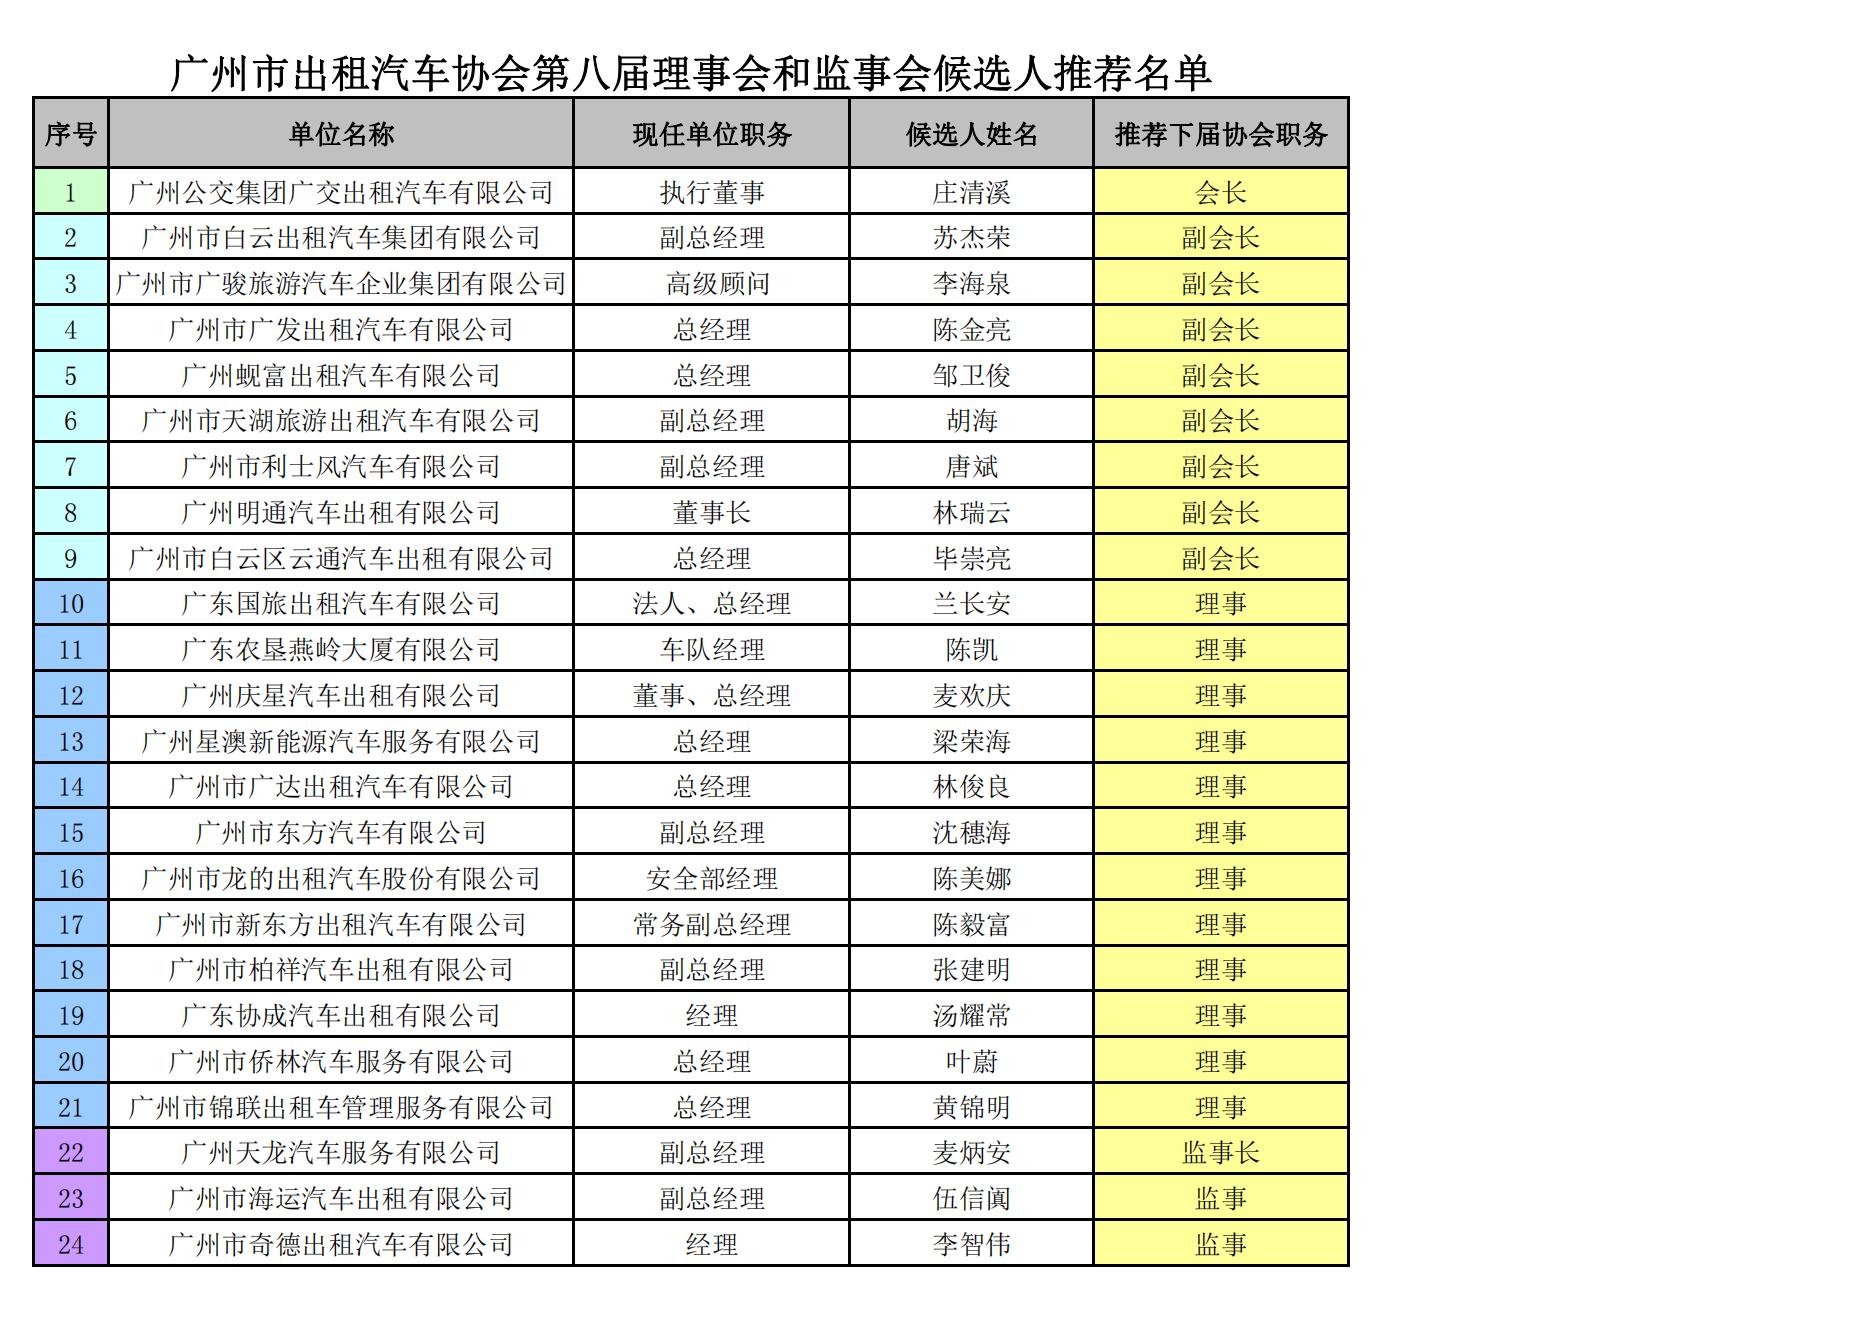 广州市出租汽车协会第八届理事会和监事会候选人推荐名单_00.jpg